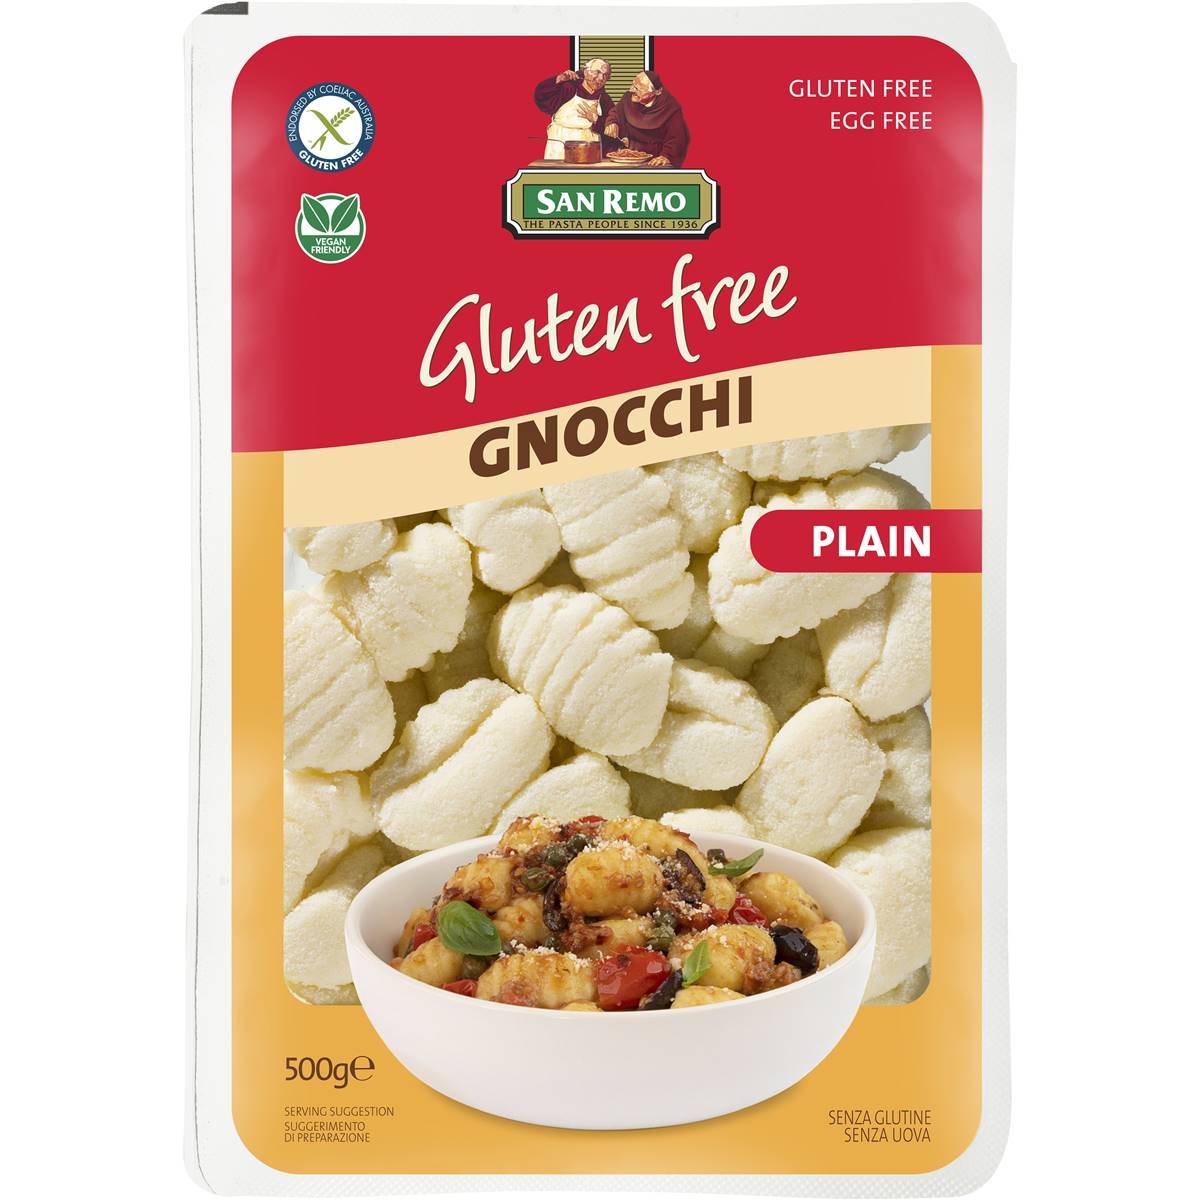 Calories in San Remo Gluten Free Gnocchi